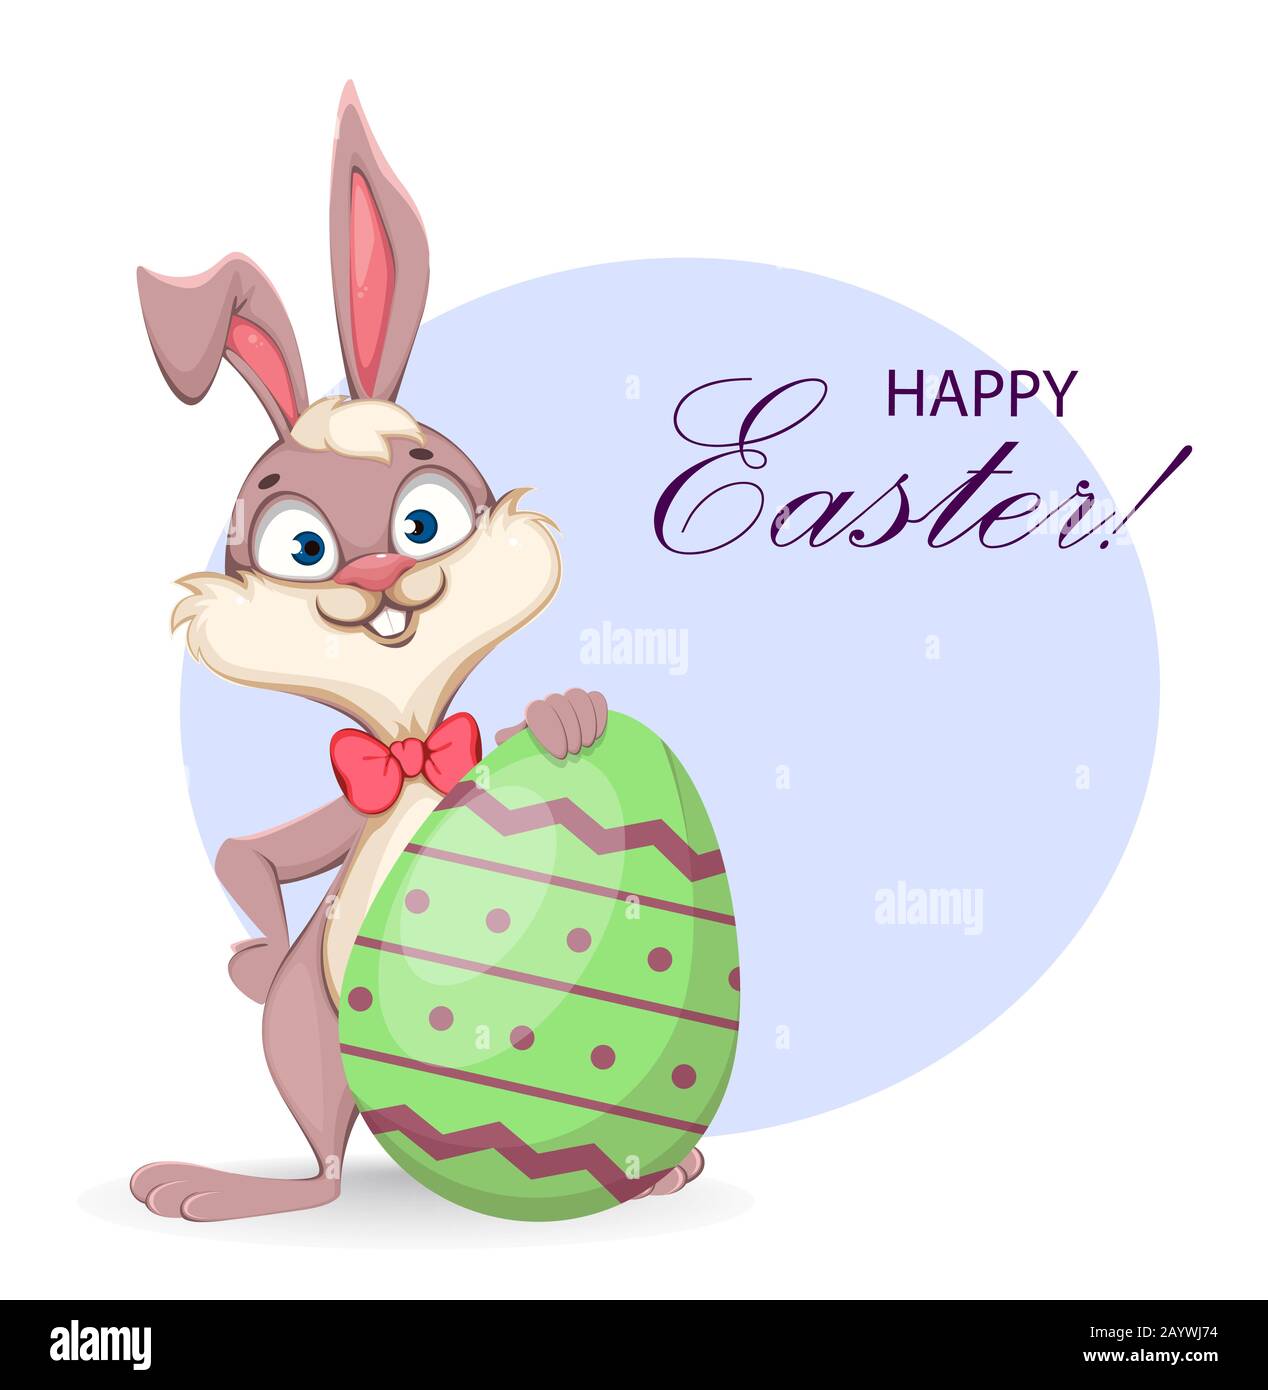 Frohe Ostern Grußkarte. Lustiger Zeichentrickkaninchen steht in der Nähe eines großen farbigen Eies. Vektor-Darstellung auf weißem Hintergrund Stock Vektor